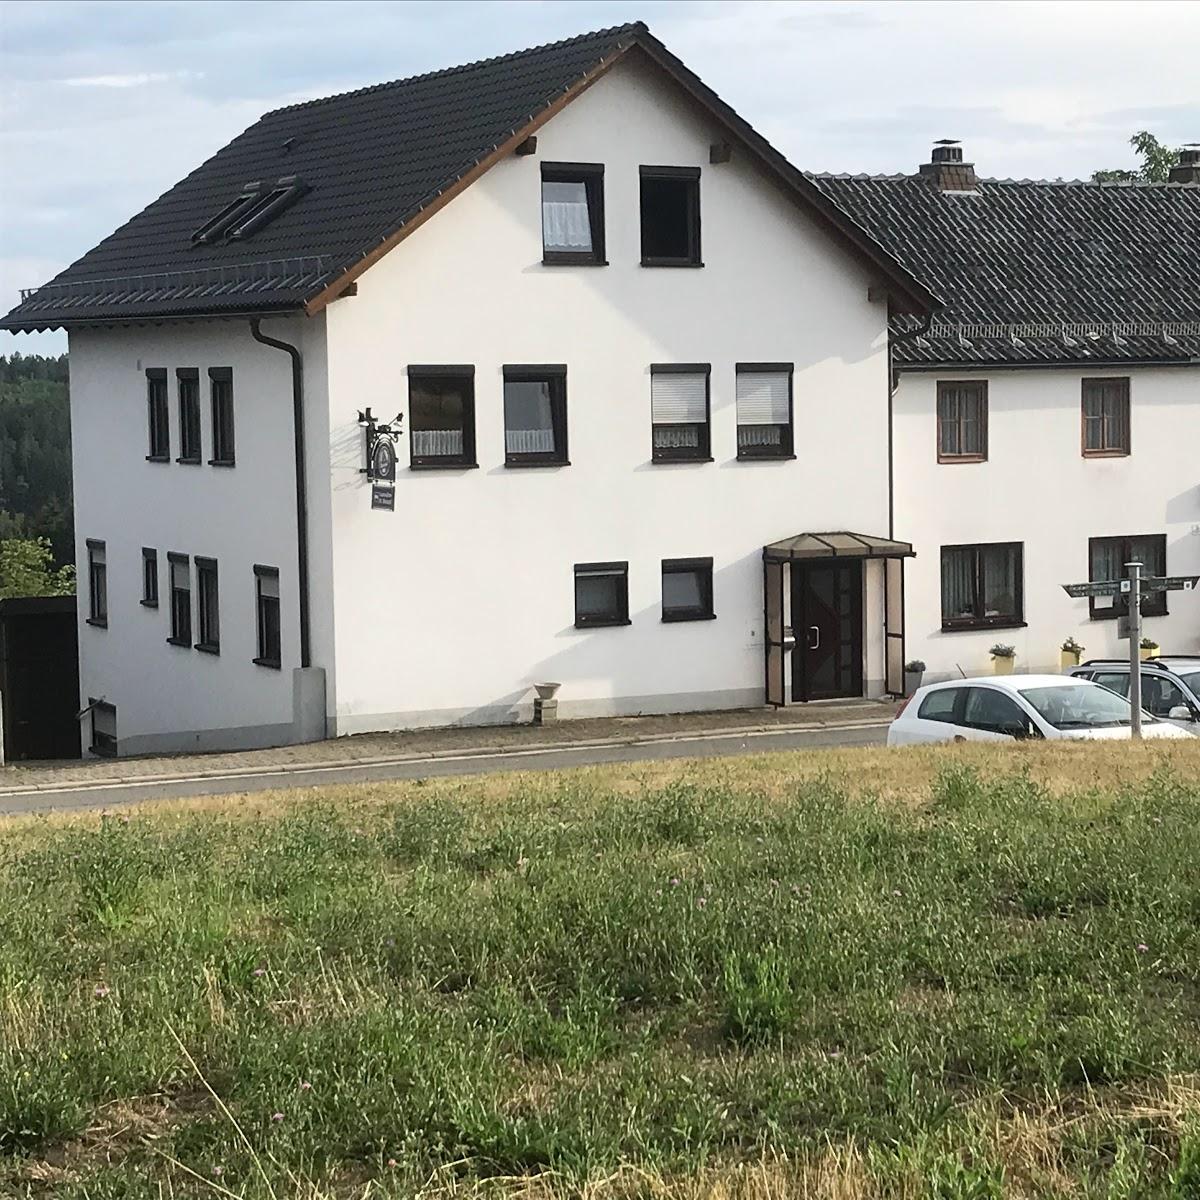 Restaurant "Dietmar Dietzel Gaststätte und Pension" in Neustadt bei Coburg